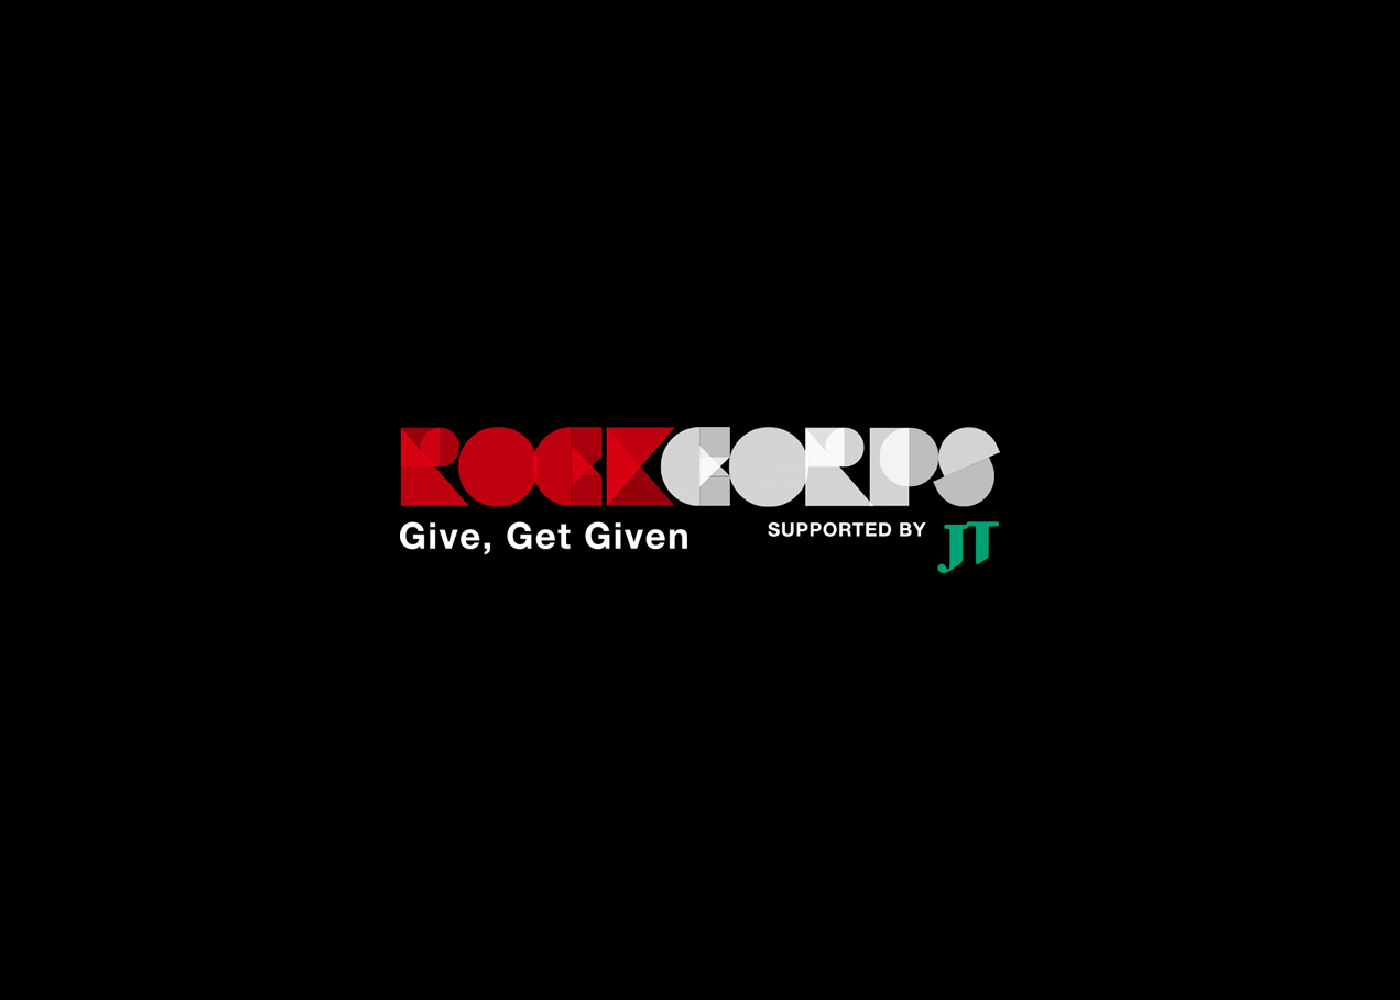 新しい社会貢献のカタチ「RockCorps（ロックコープス）」  4年連続4回目の日本開催決定!